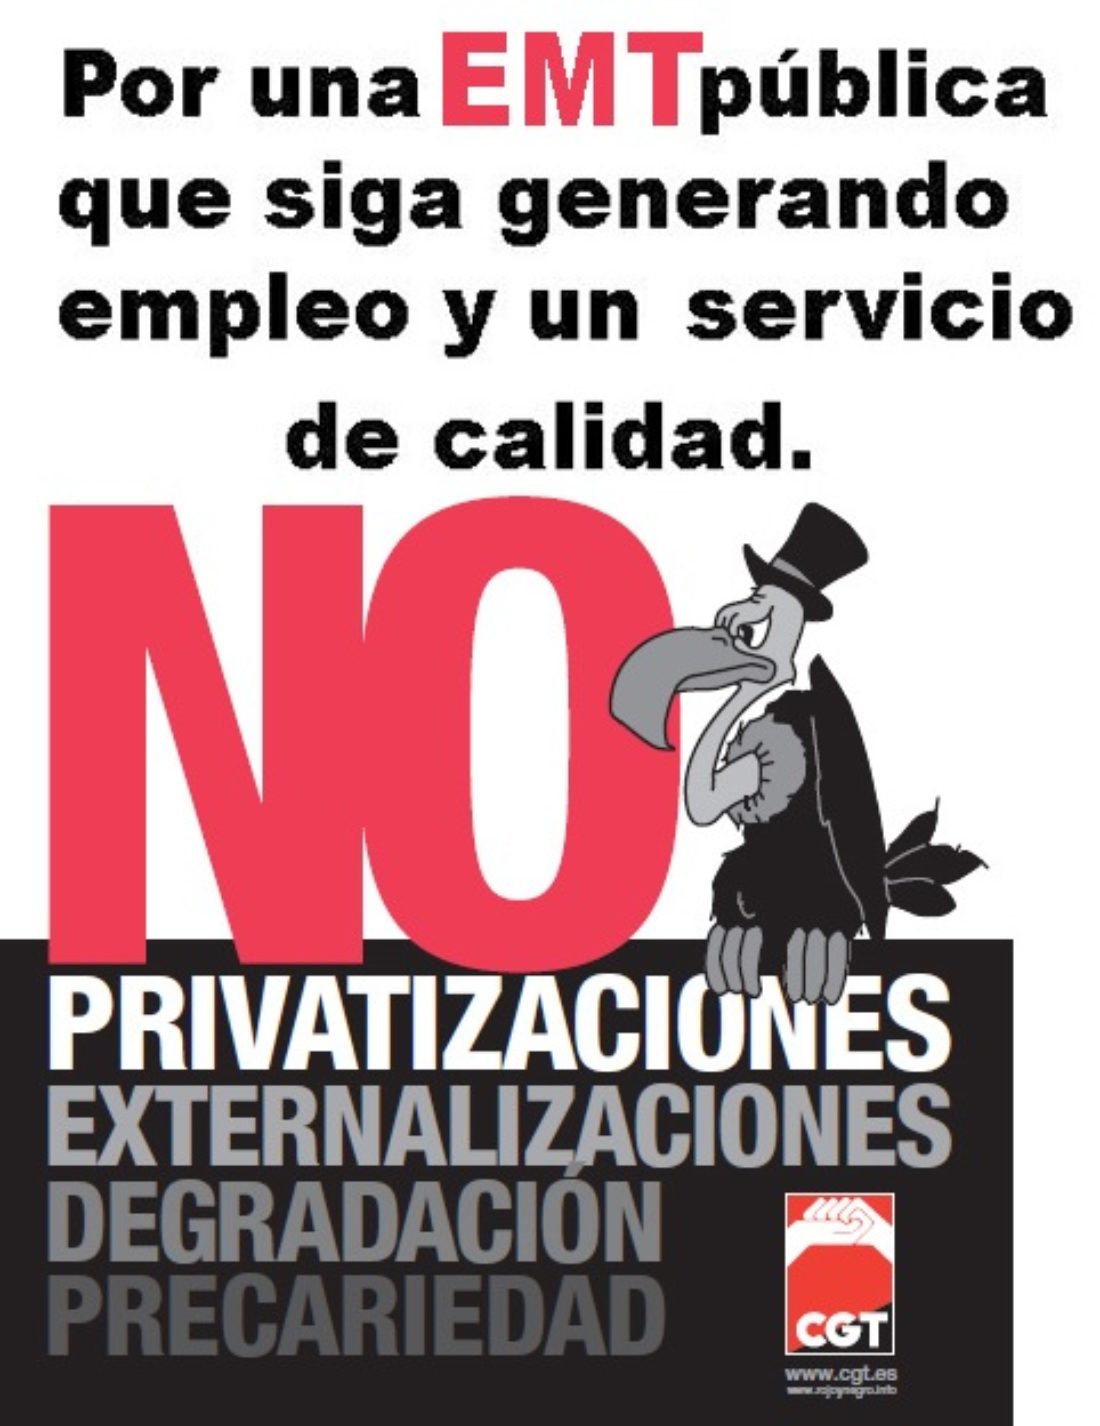 Manifestacion EMT contra el desmantelamiento y la privatización de los servicios públicos